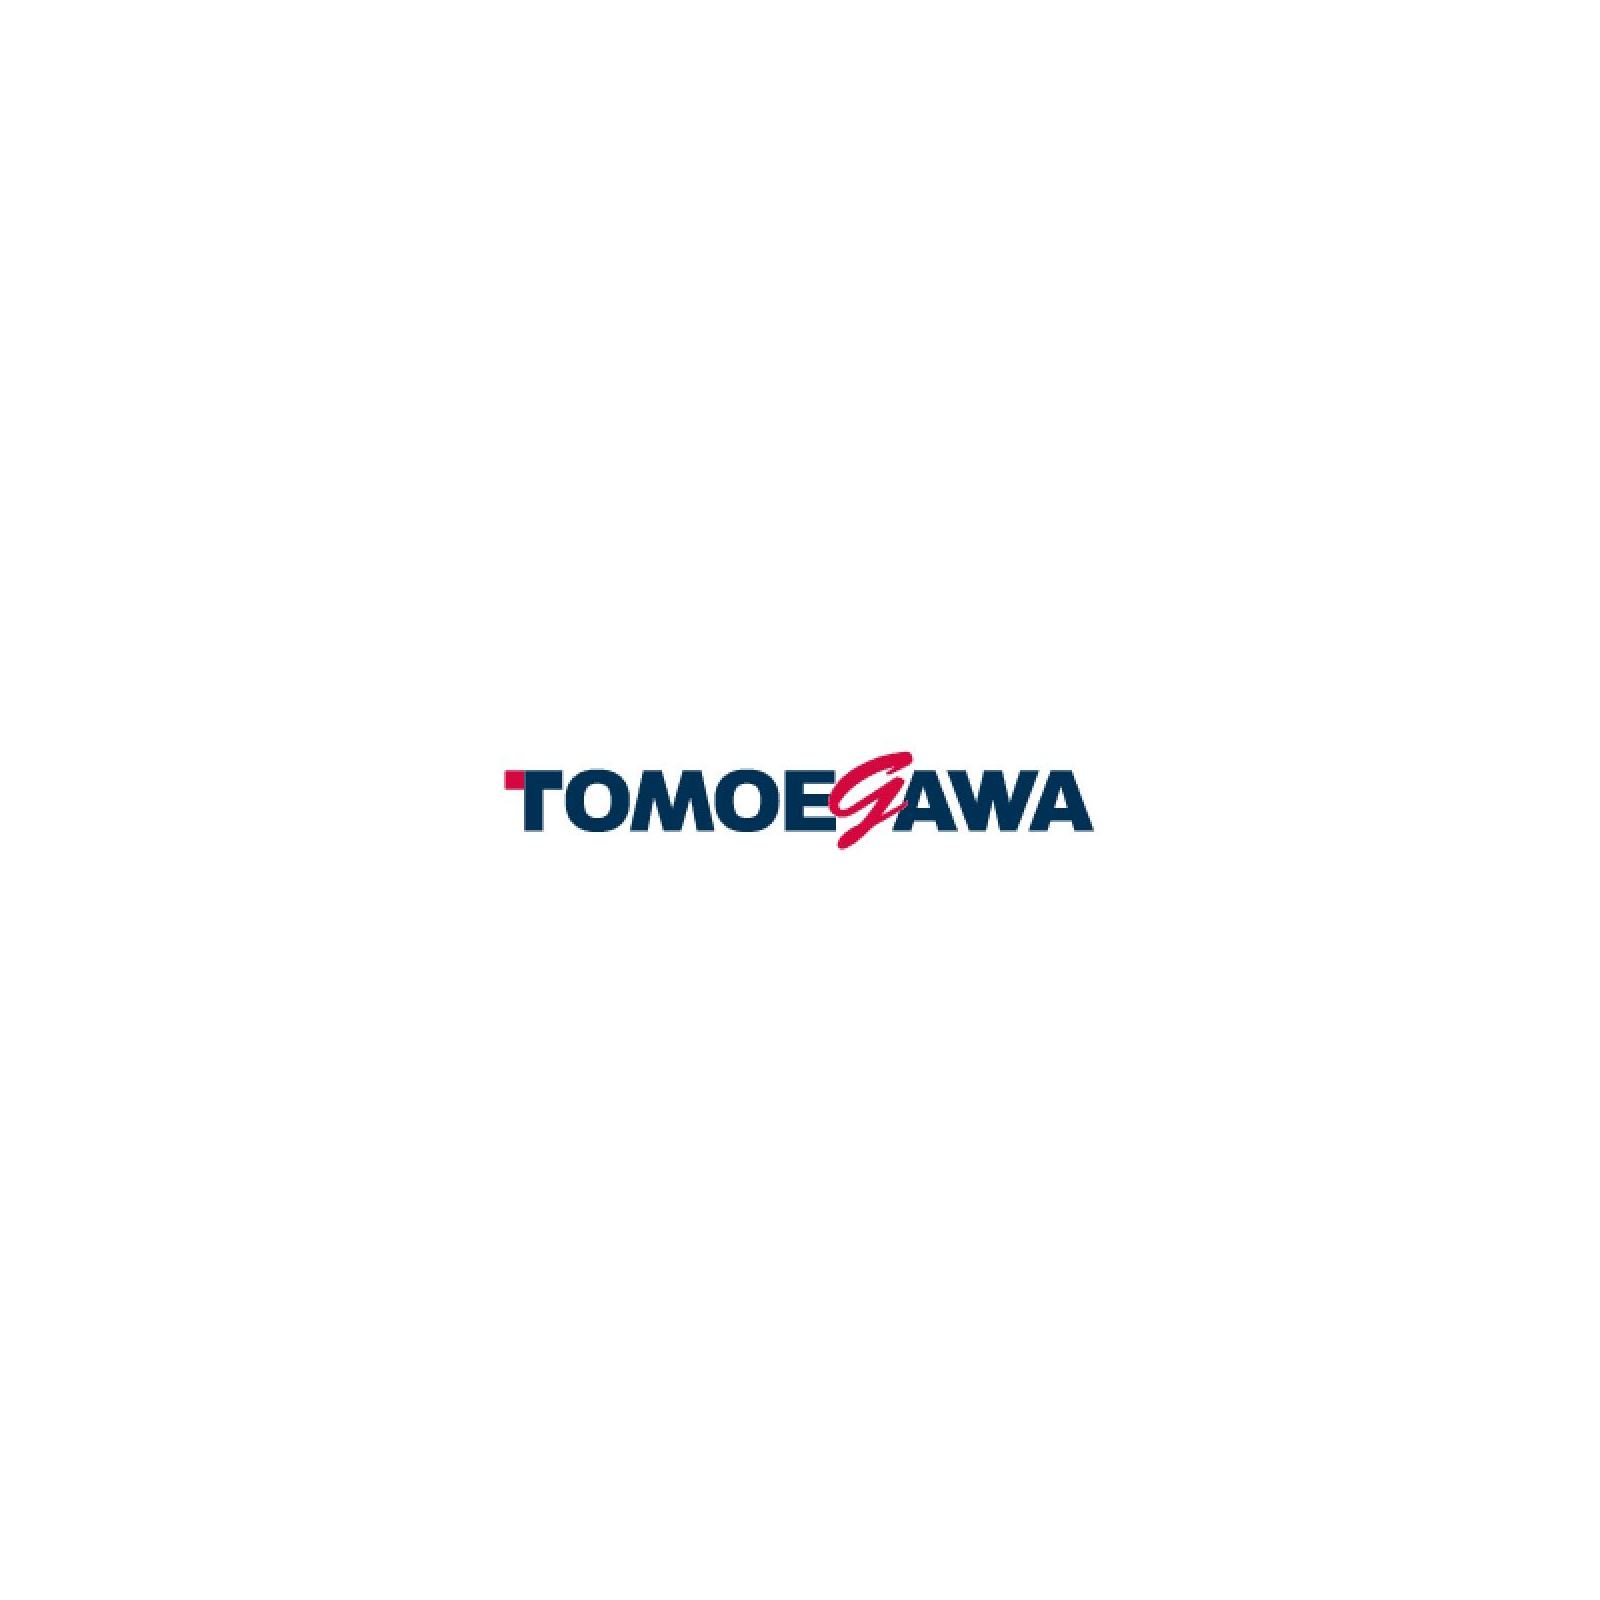 Тонер BROTHER HL-5340 2x10кг Tomoegawa (BR-10-20)